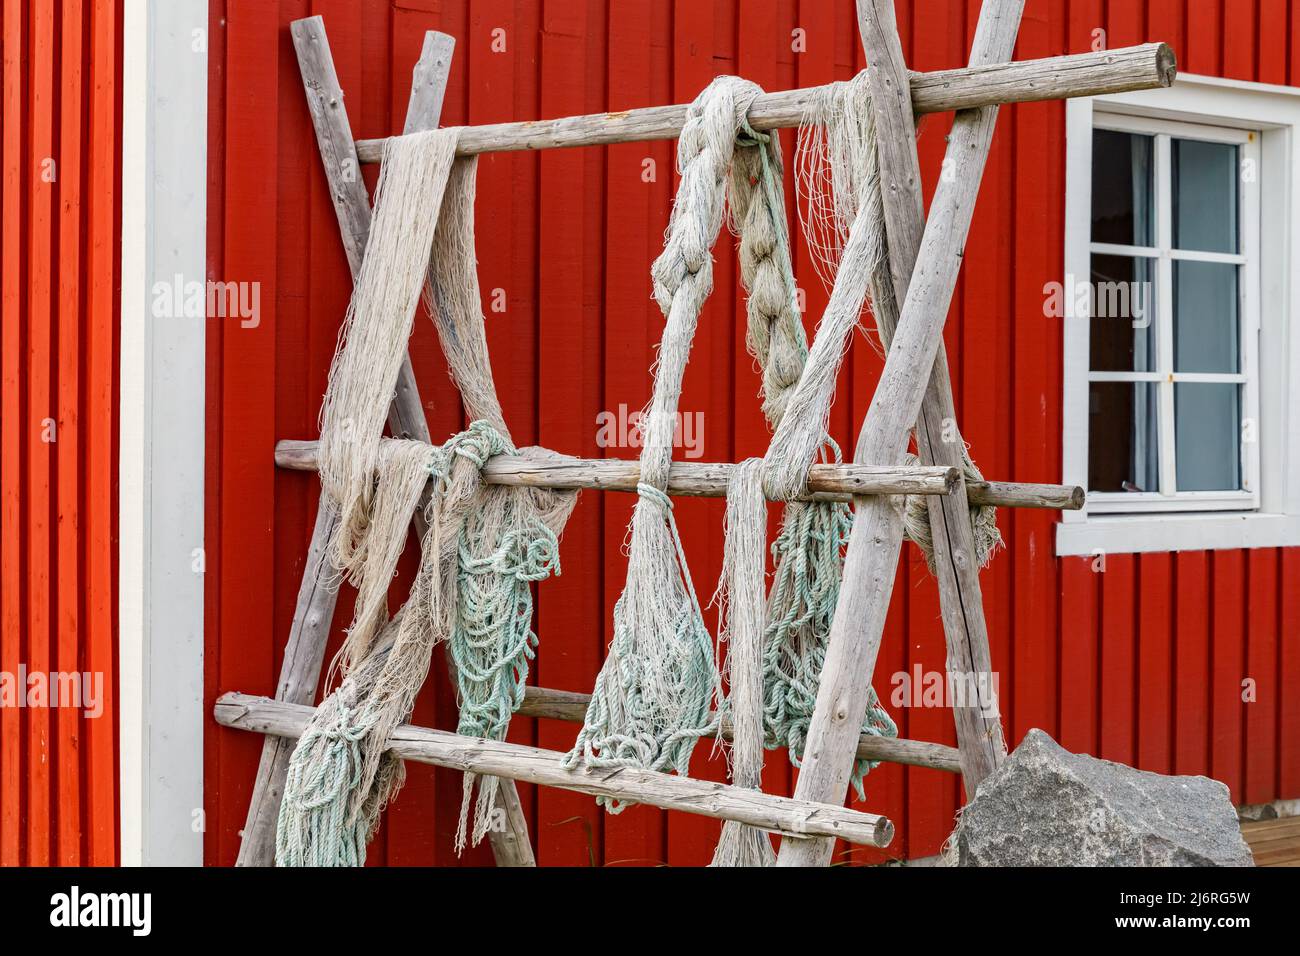 Lofoten islas, redes de pesca colgadas en la valla o porche, paisaje noruego clásico, casa de color rojo, redes de pesca cuidadosamente seleccionados Foto de stock